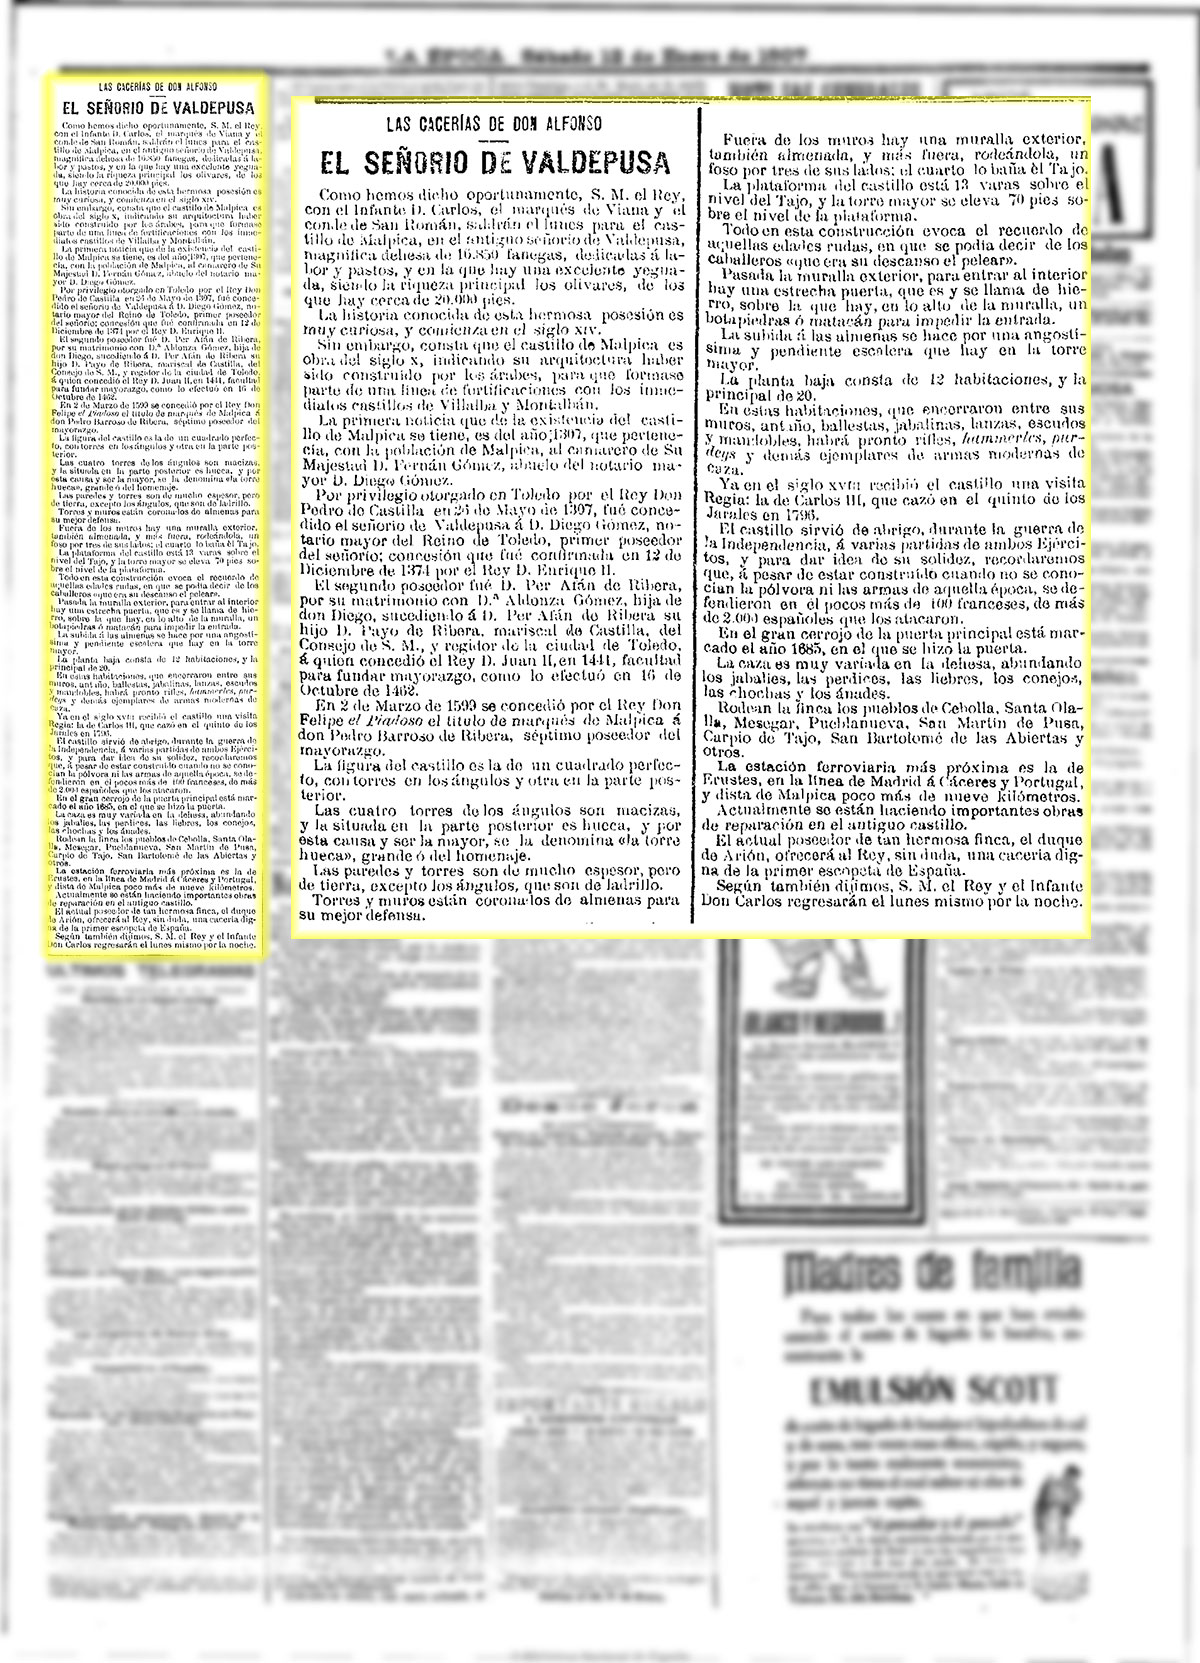 La Época 12-1-1907, n.º 20.238. Artículo sobre Valdepusa con motivo de la cacería del rey Alfonso XIII